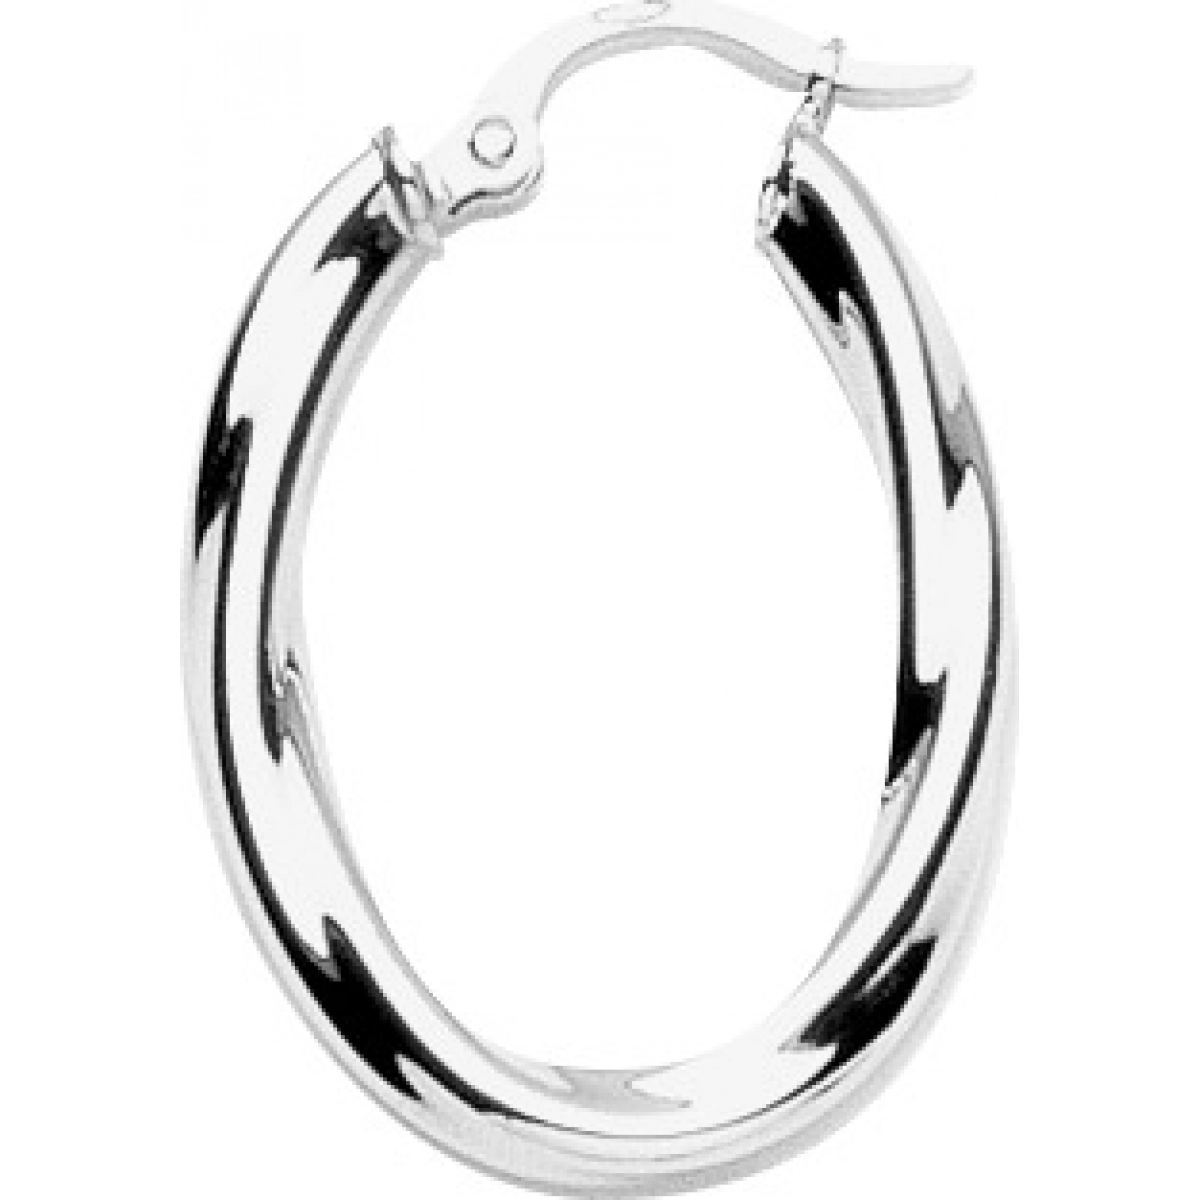 Hoops earrings pair rh925 Silver  Lua Blanca  335148.0